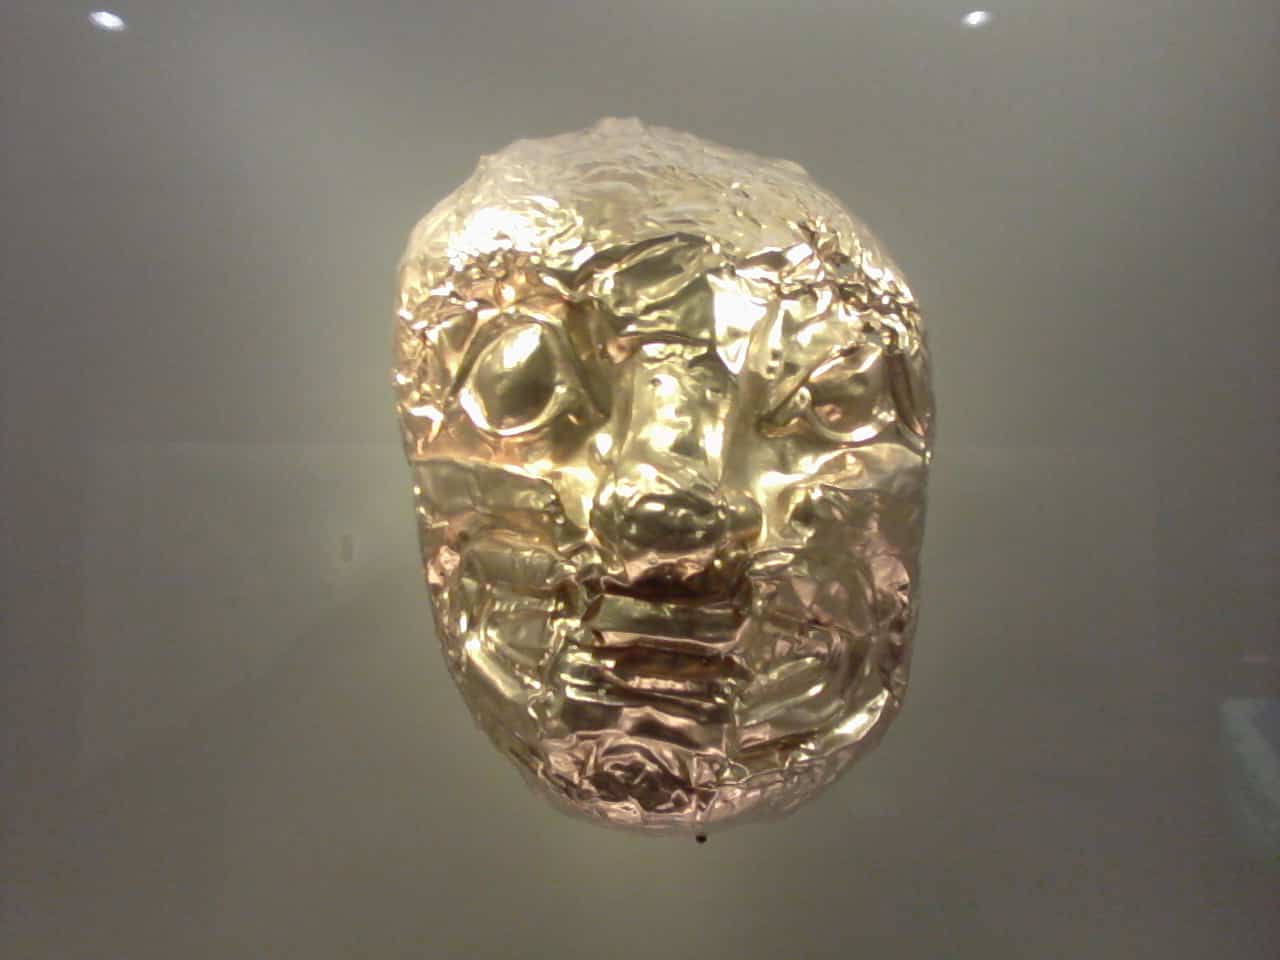 Le musée de l’or – Bogotá